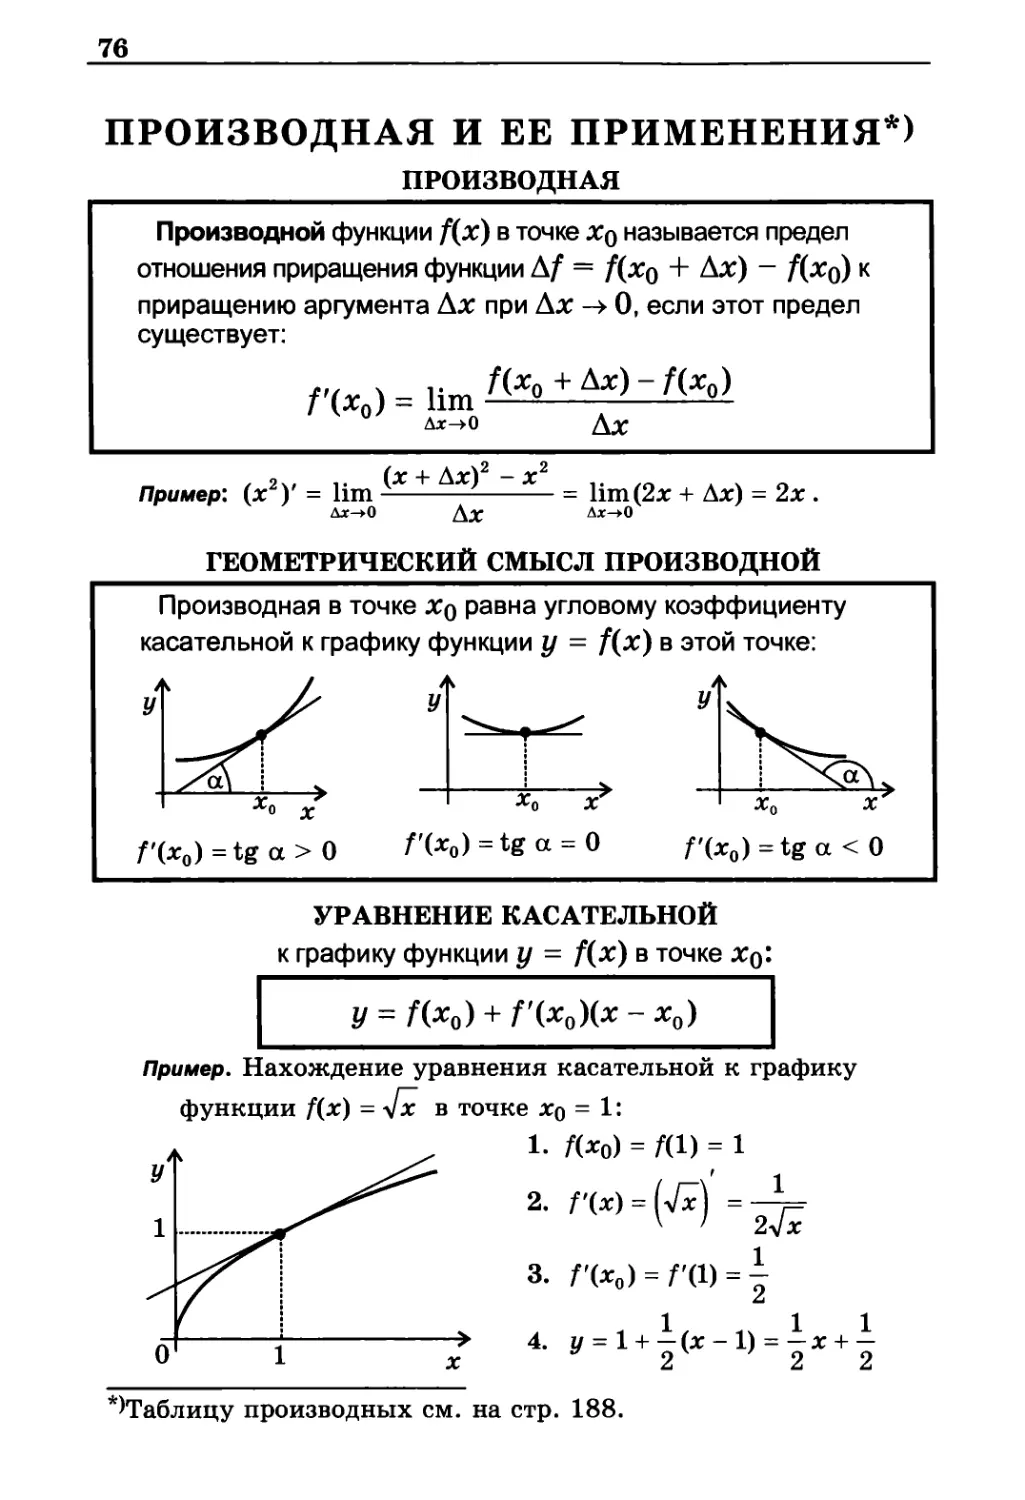 ПРОИЗВОДНАЯ И ЕЕ ПРИМЕНЕНИЯ
Геометрический смысл производной
Уравнение касательной